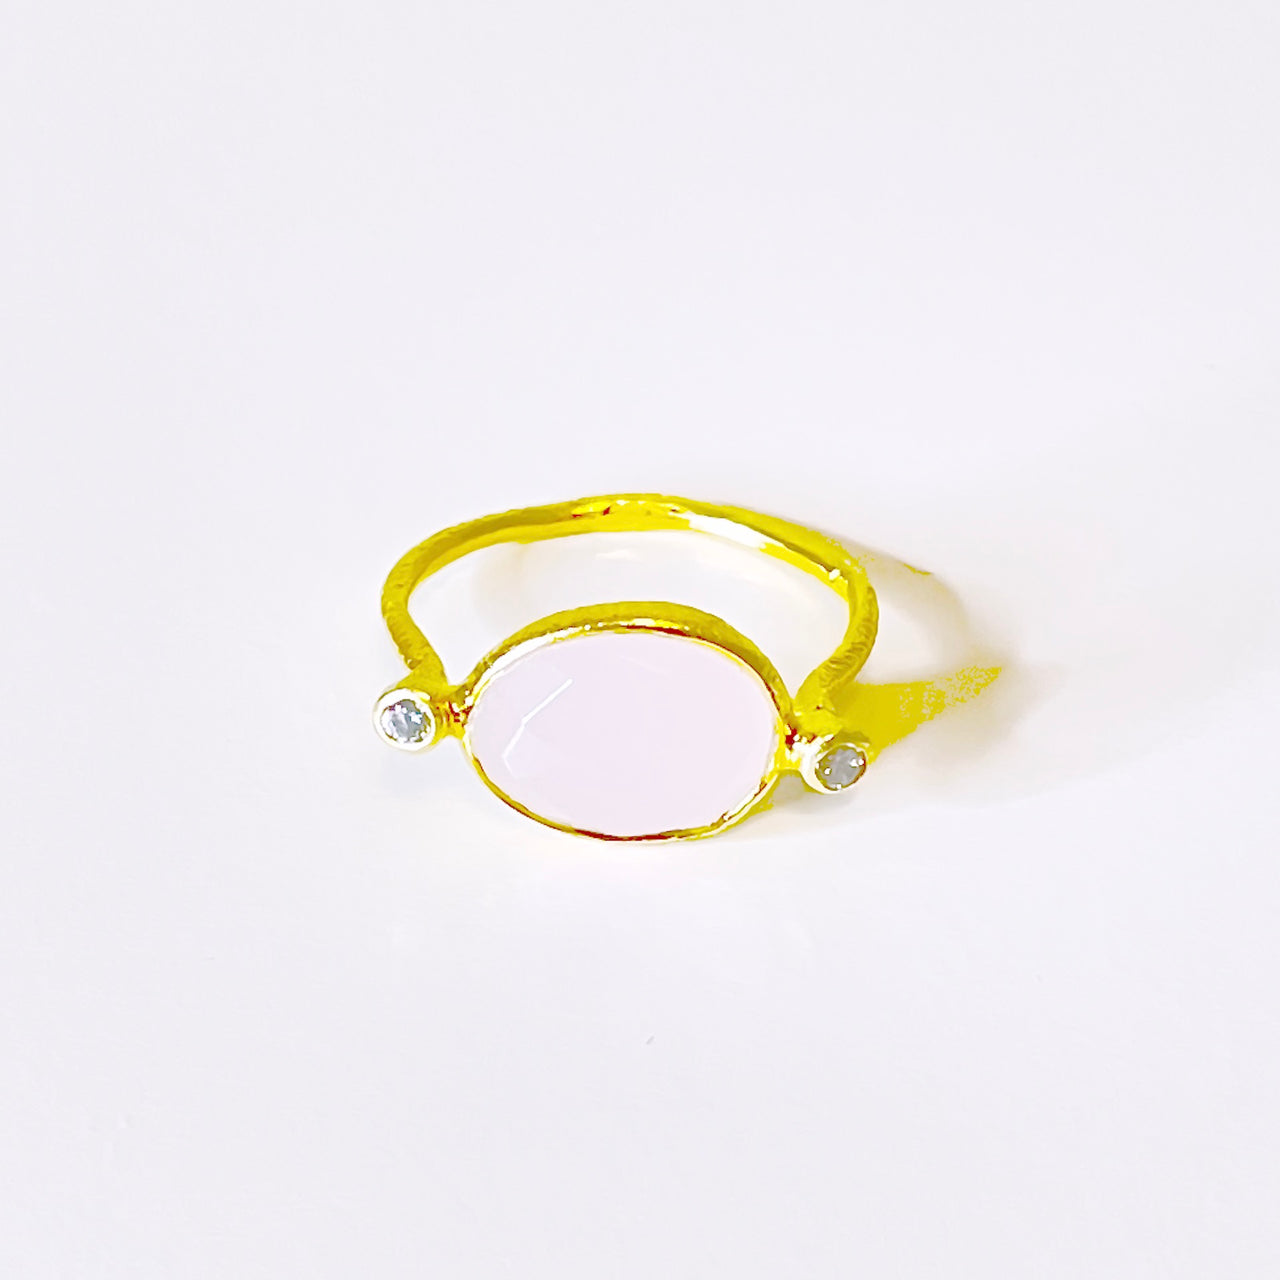 Anillo de plata 925 con baño de oro. El detalle central es en Cuarzo Rosa con 2 circonitas blancas. Este anillo es super combinable con tu look favorito. Frontal